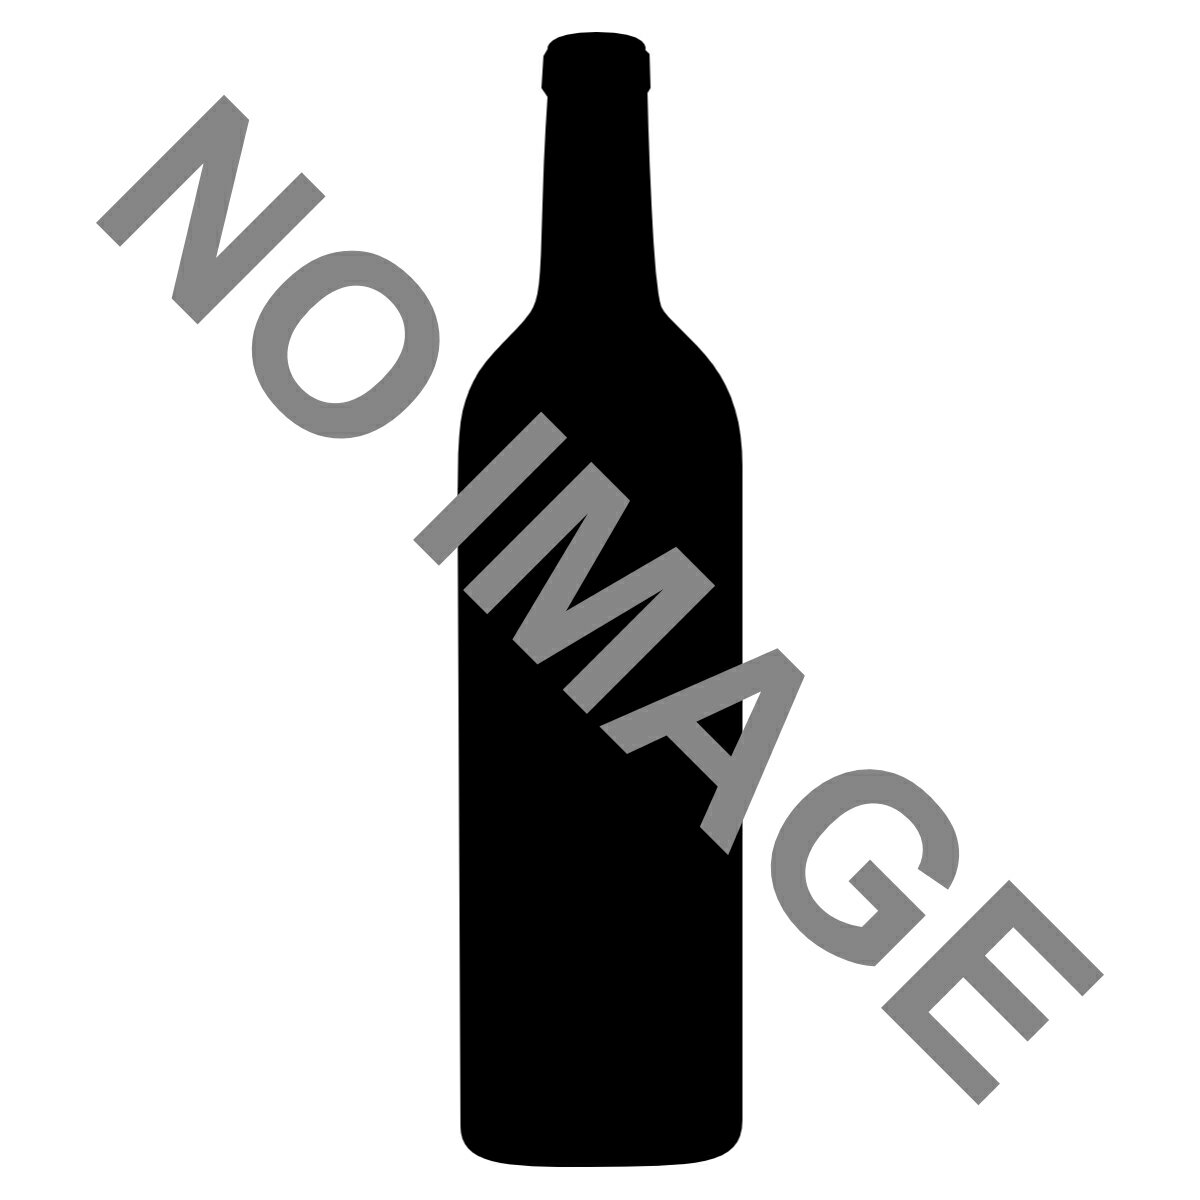 白ワイン商品説明いきいきとしたシトラス系果実の風味とドップならではのバランスの良さを特長とした、いかにもリースリングらしいチャーミングなワインに仕上がっています。カキや甲殻類・ニジマスなどと相性抜群です。商品情報色・タイプ:白/辛口品種:リースリング 100%容量:750ml産地:フランス　アルザスこちらの商品はお取り寄せ商品になります。・発送まで2日〜5日お時間が掛かります。・発送予定日は予告なく変更される場合がございます。・ヴィンテージが変更になる場合がございます。・輸入元様の在庫が欠品する場合がございます。注意事項・商品リニューアル等により、パッケージデザイン、内容量、成分等が変更され、表示画像と異なる場合がございます。・大量注文等で一時在庫切れが発生する場合がございます。・他のサイトでも販売中で、在庫がない場合もあります。品切れの際は注文をキャンセルすることがありますので、ご了承ください。